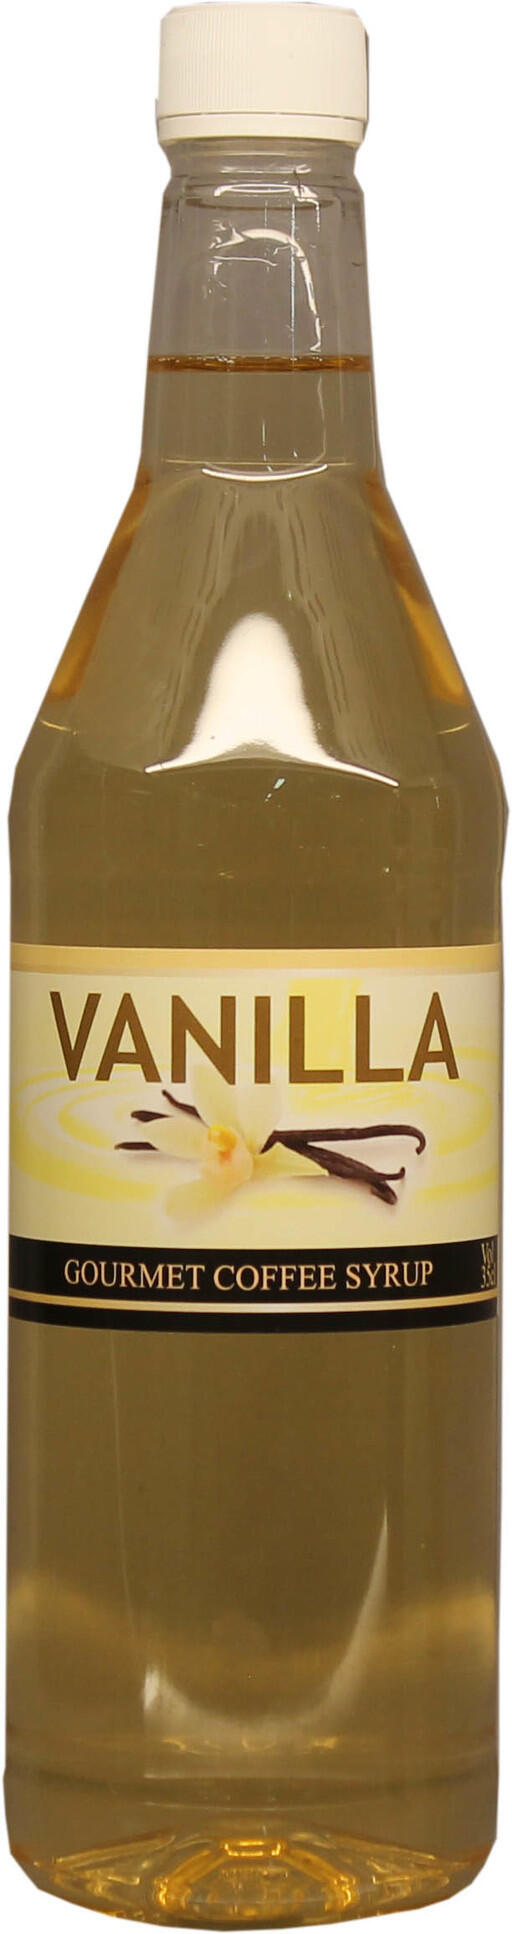 Vanilla syrup, vaniljsirap ger god smak av vanilj.